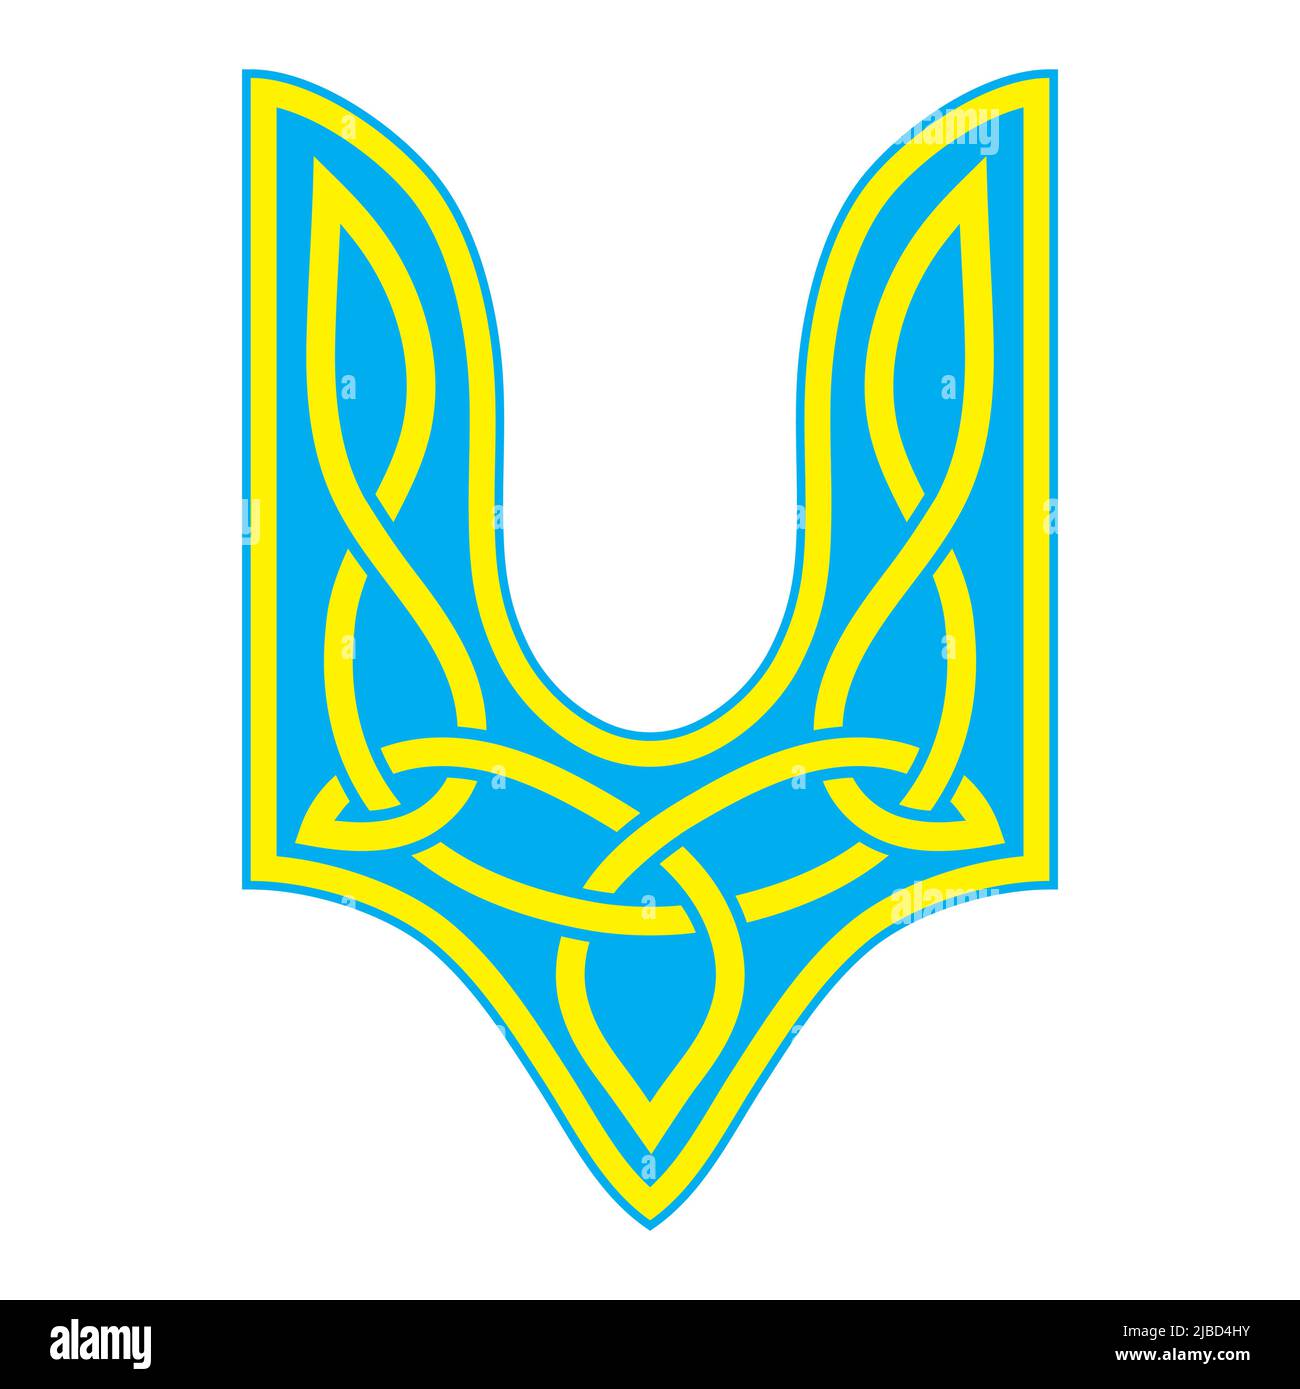 Design avec le Trident - l'élément principal de l'emblème de l'Ukraine sous la forme d'un trident doré d'une forme spéciale sur un champ bleu. Illustration de Vecteur